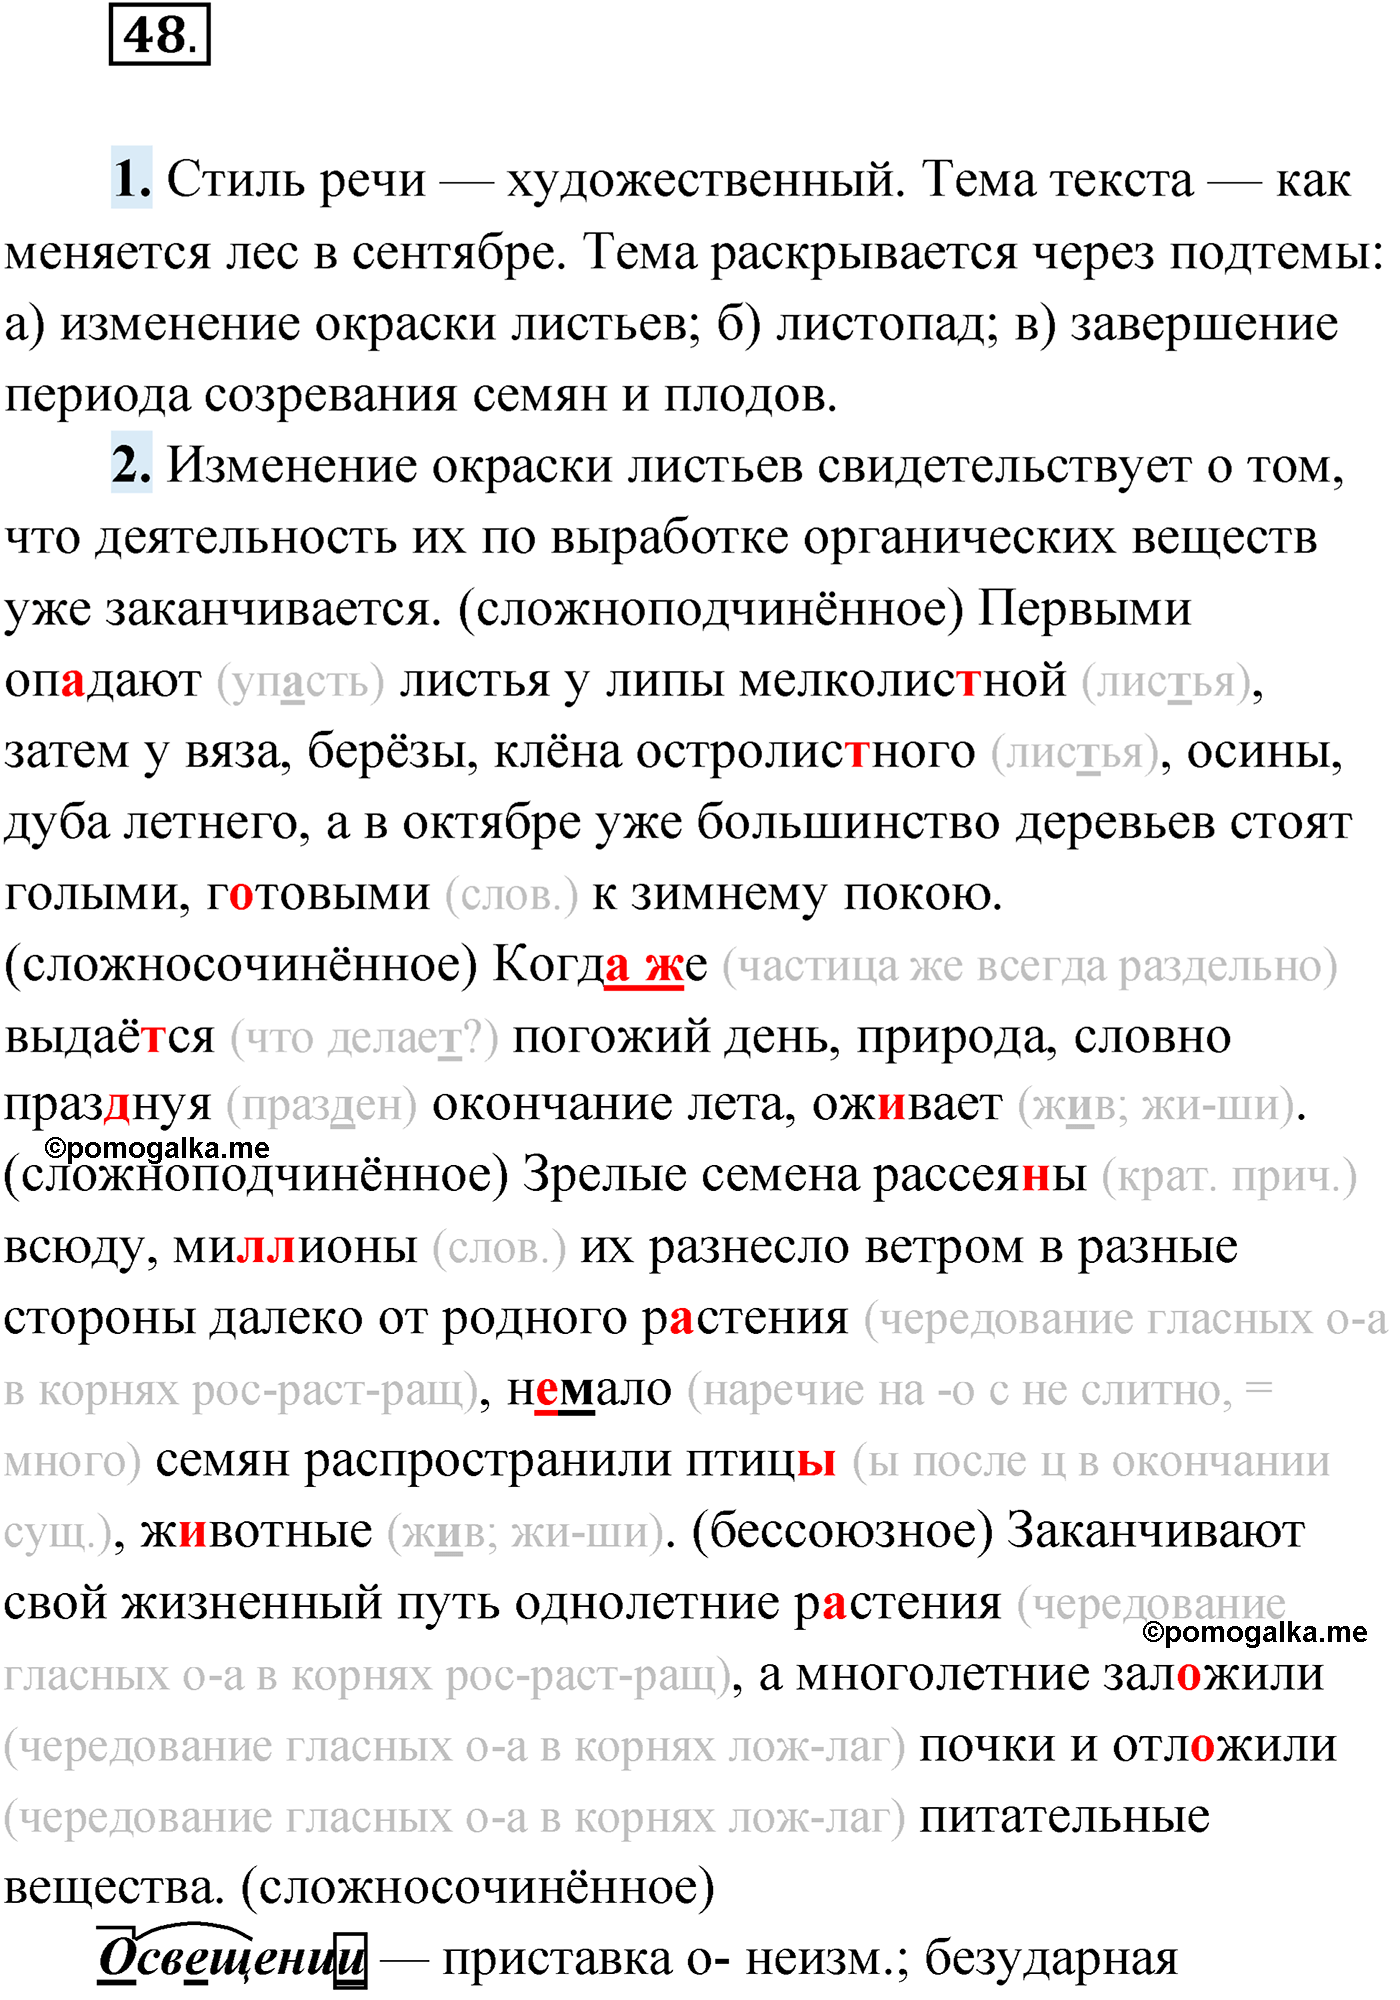 упражнение №48 русский язык 9 класс Мурина 2019 год